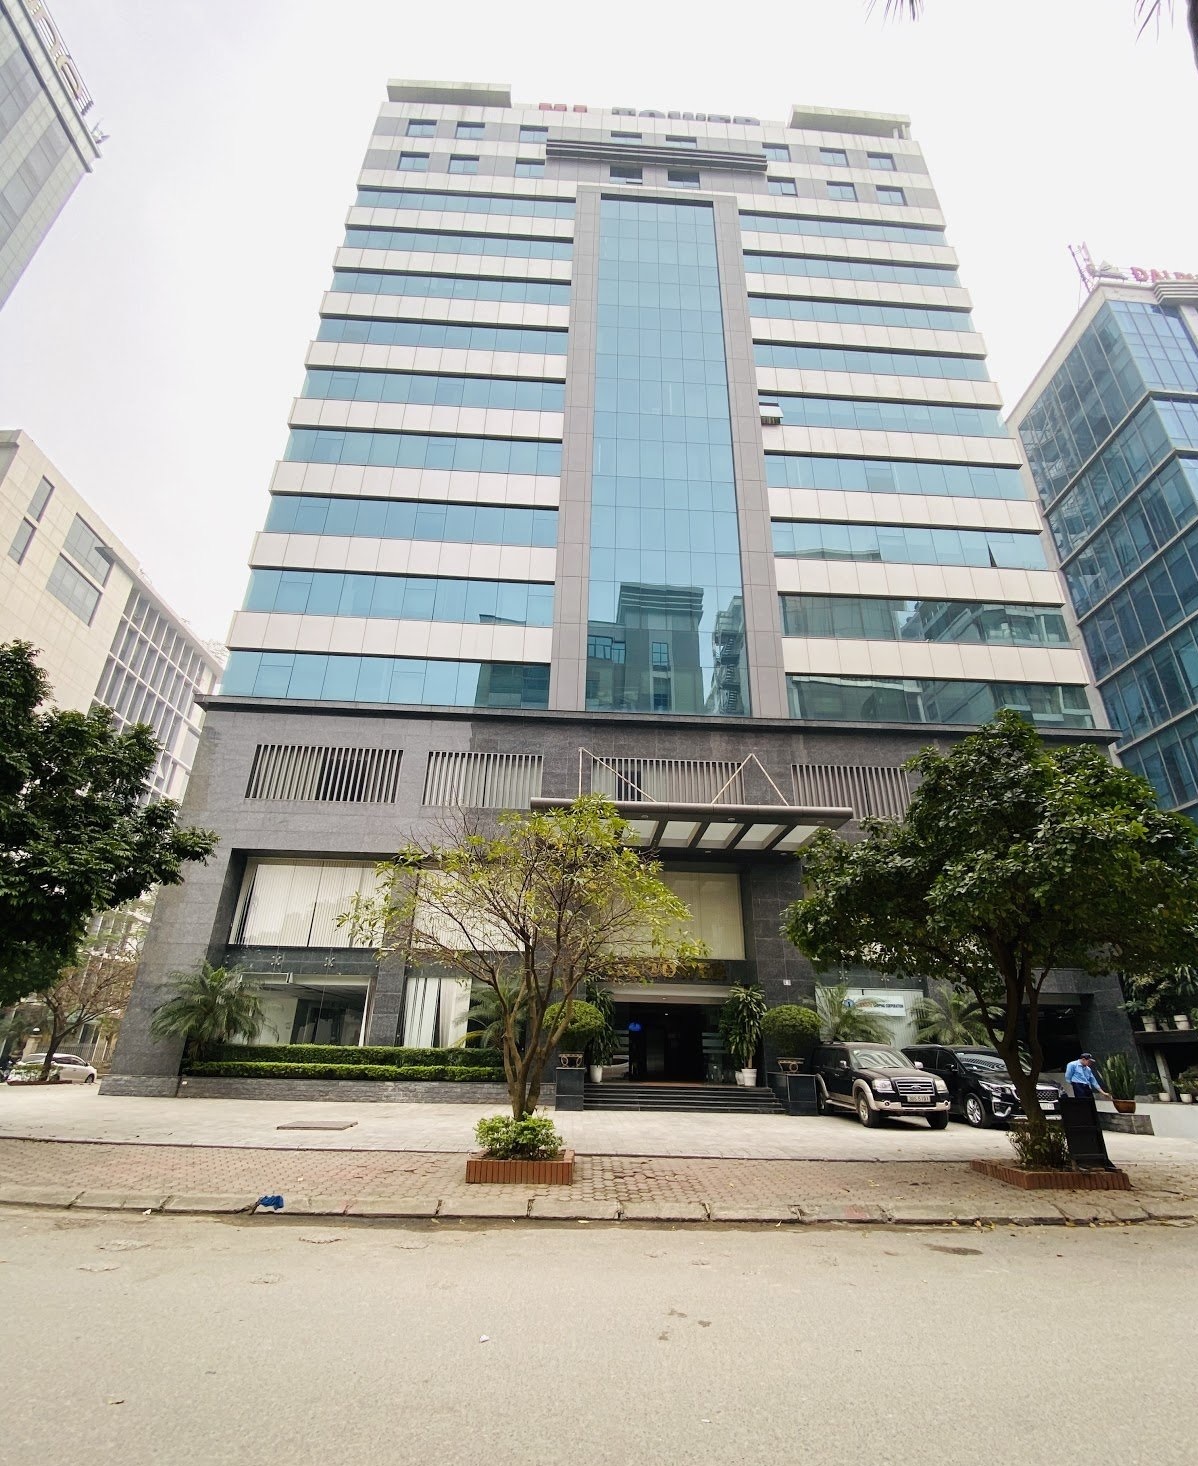 Cđt tòa HL, Duy Tân cần cho thuê văn phòng giá rẻ 118m2, 140m2, 440m2 LH 0909300689